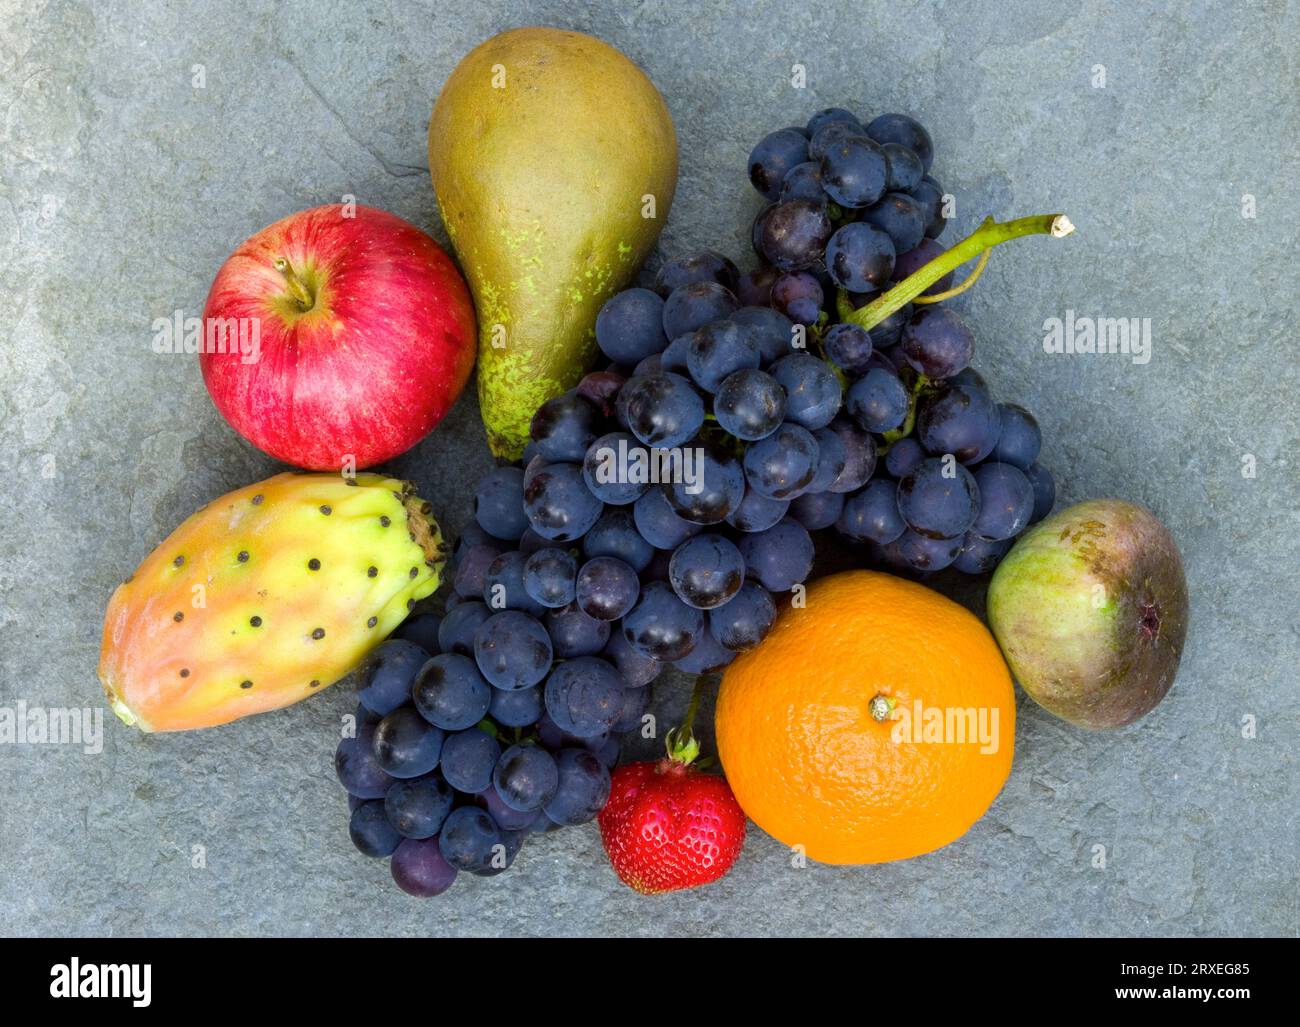 Mixed fruit on slate Stock Photo